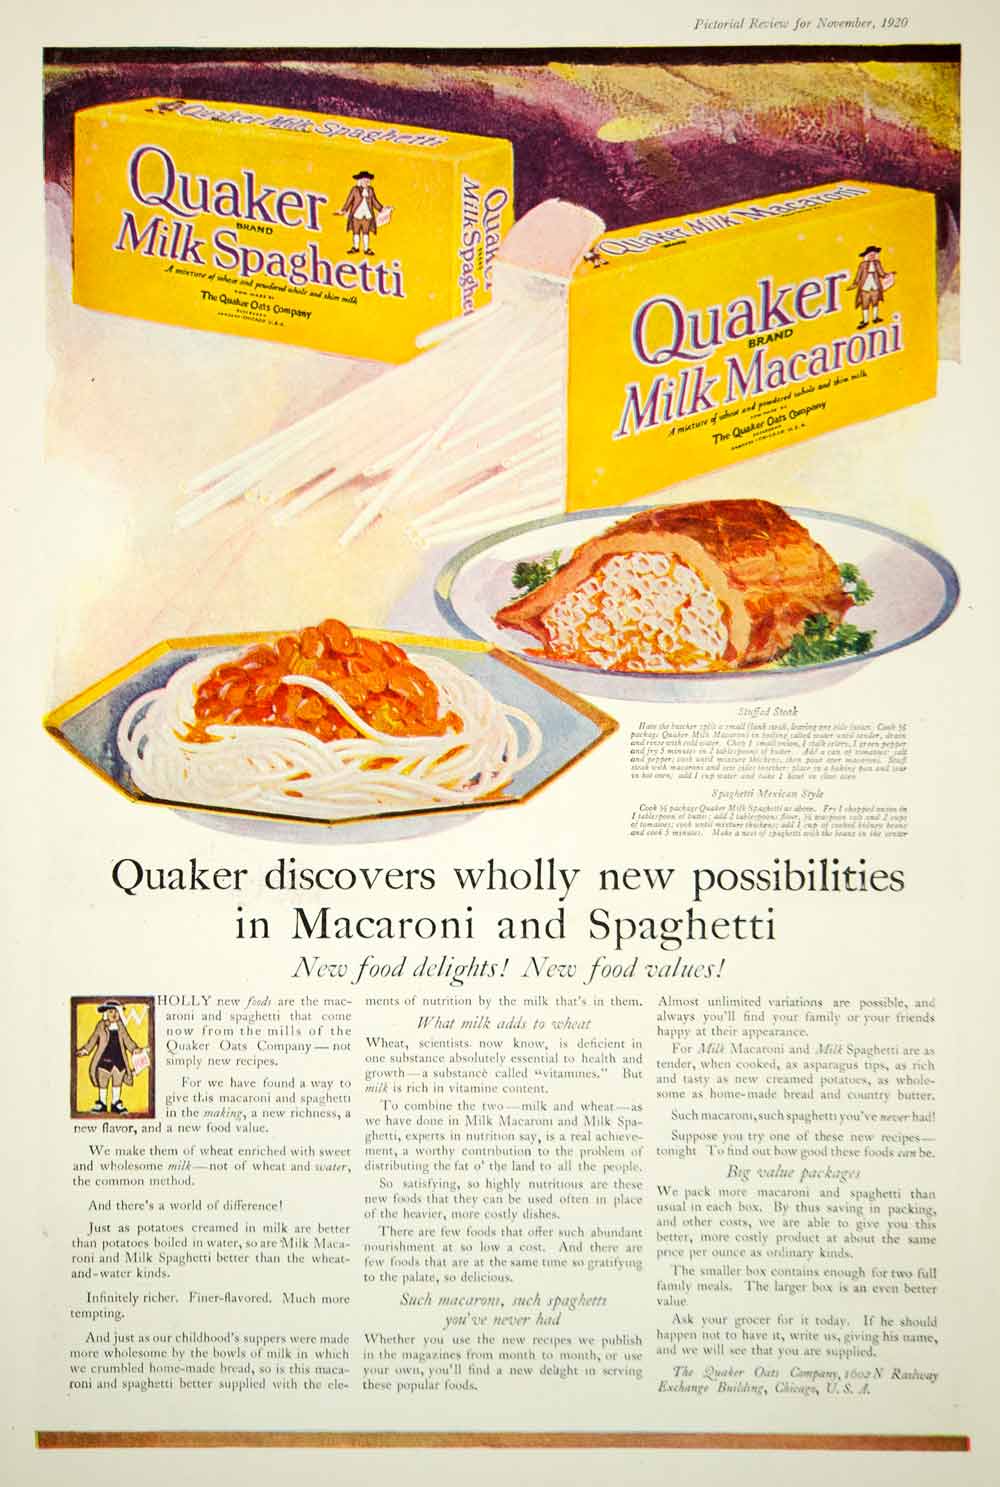 1920 Ad Vintage Quaker Oats Brand Milk Spaghetti Macaroni Recipe Pasta Trademark